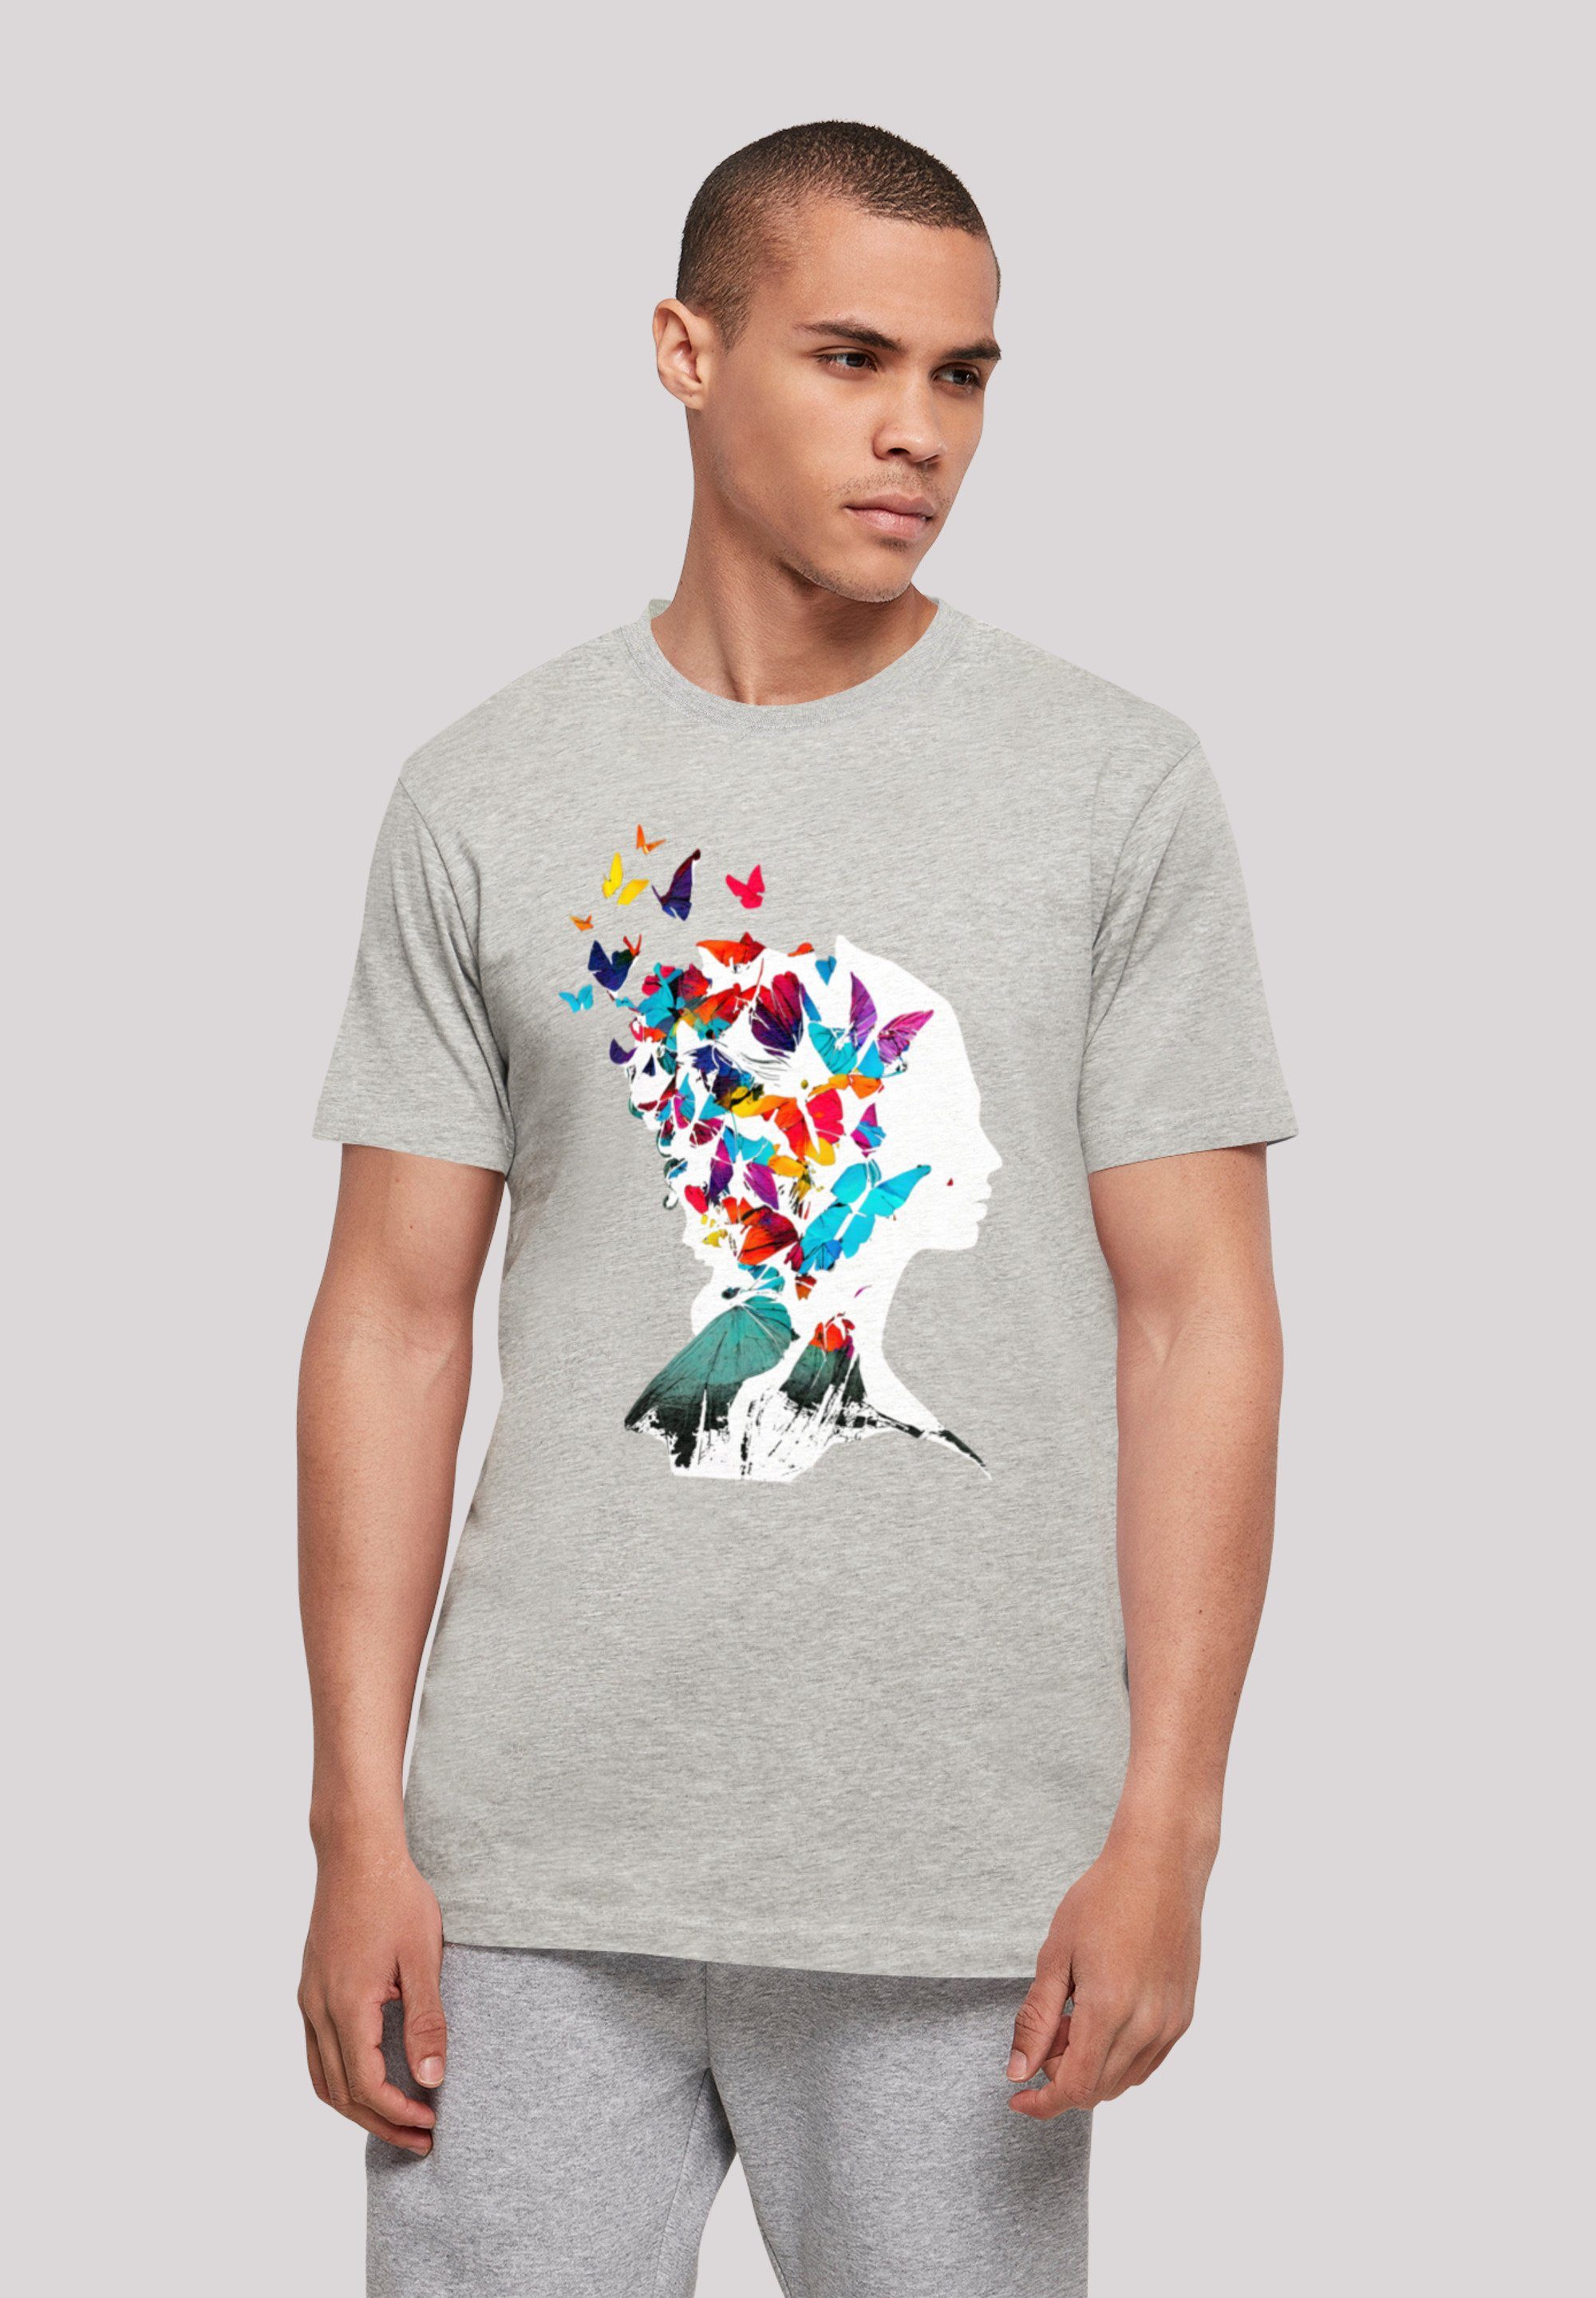 mit Print, TEE Baumwollstoff Silhouette Schmetterling weicher F4NT4STIC T-Shirt hohem Tragekomfort Sehr UNISEX